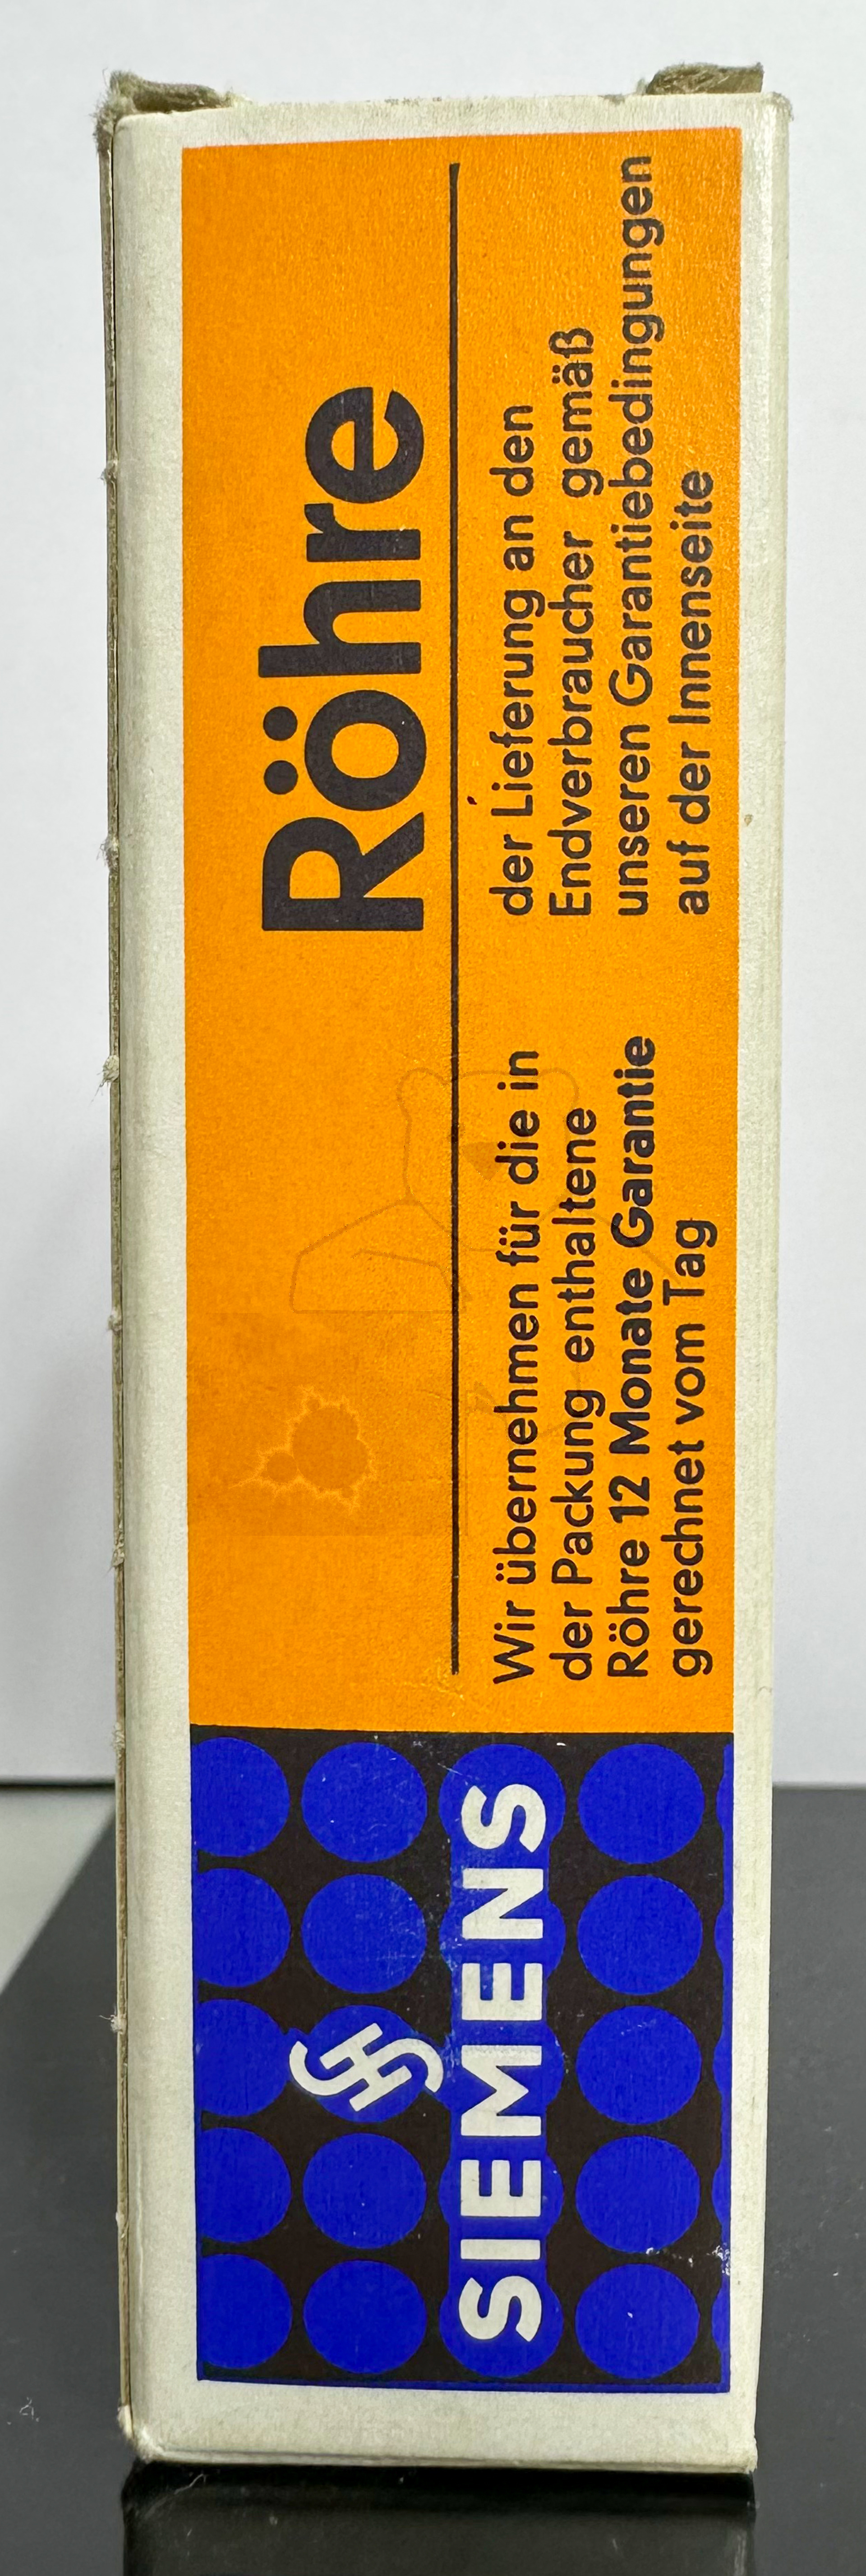 Röhre ECC8100 #1956 Verpackung Bild 3